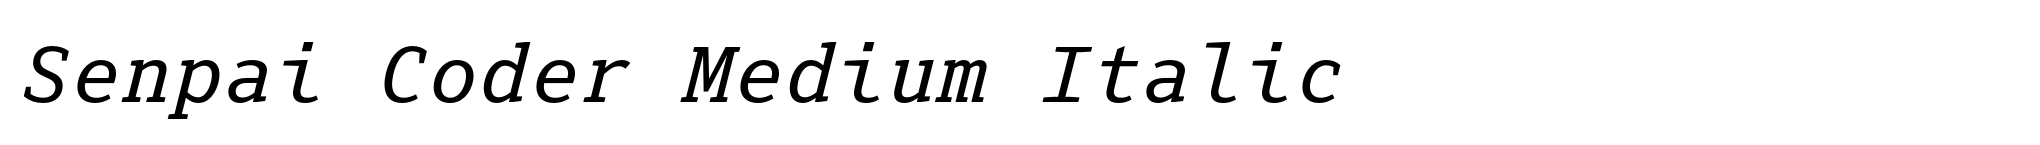 Senpai Coder Medium Italic image